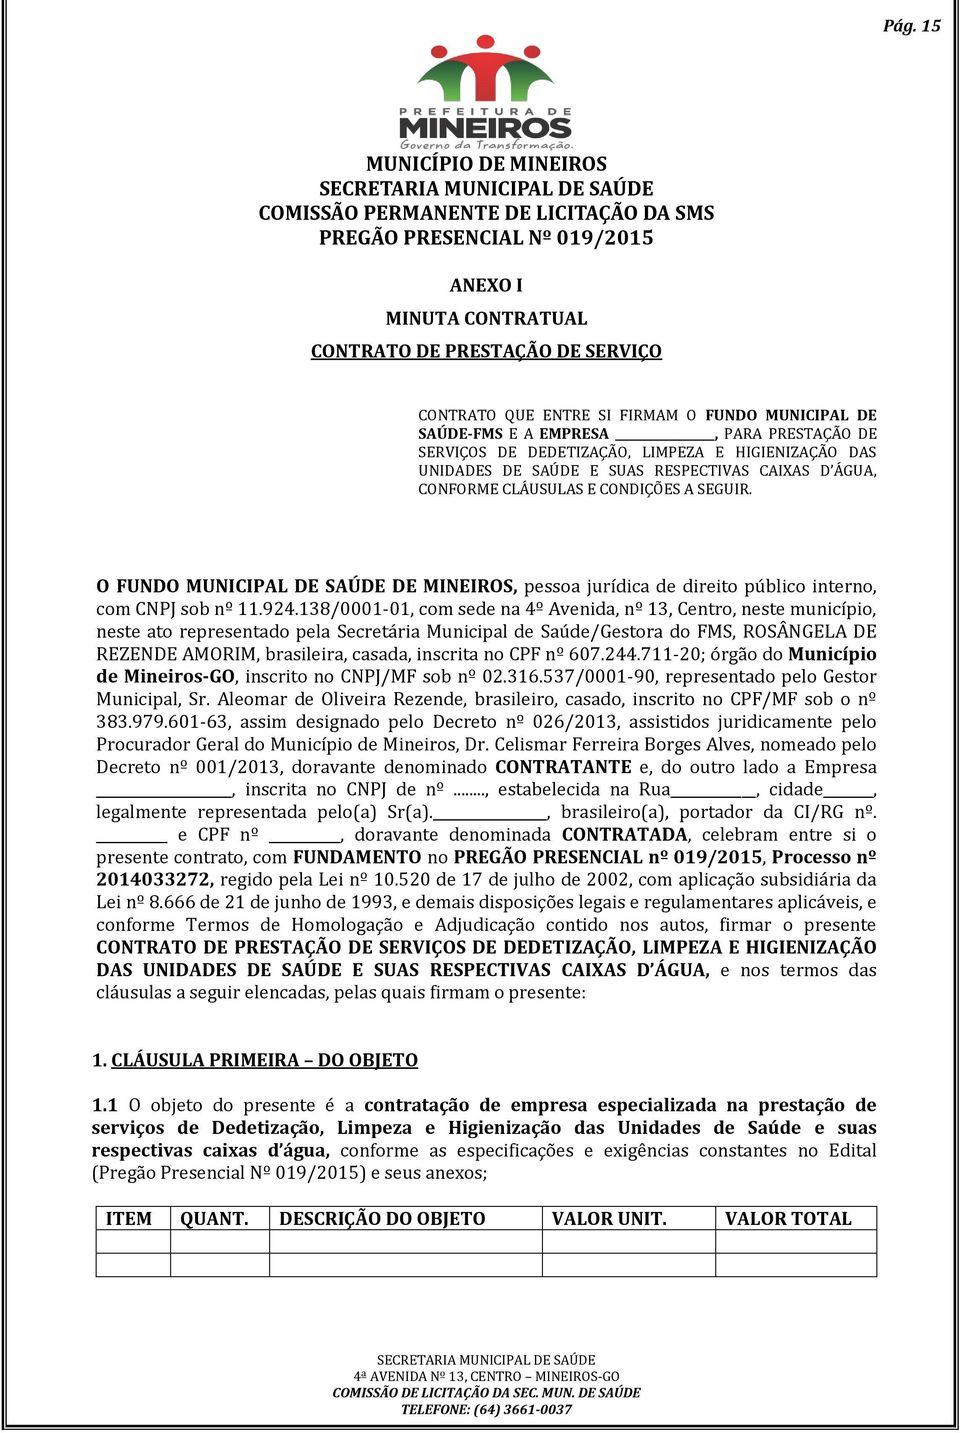 O FUNDO MUNICIPAL DE SAÚDE DE MINEIROS, pessoa jurídica de direito público interno, com CNPJ sob nº 11.924.